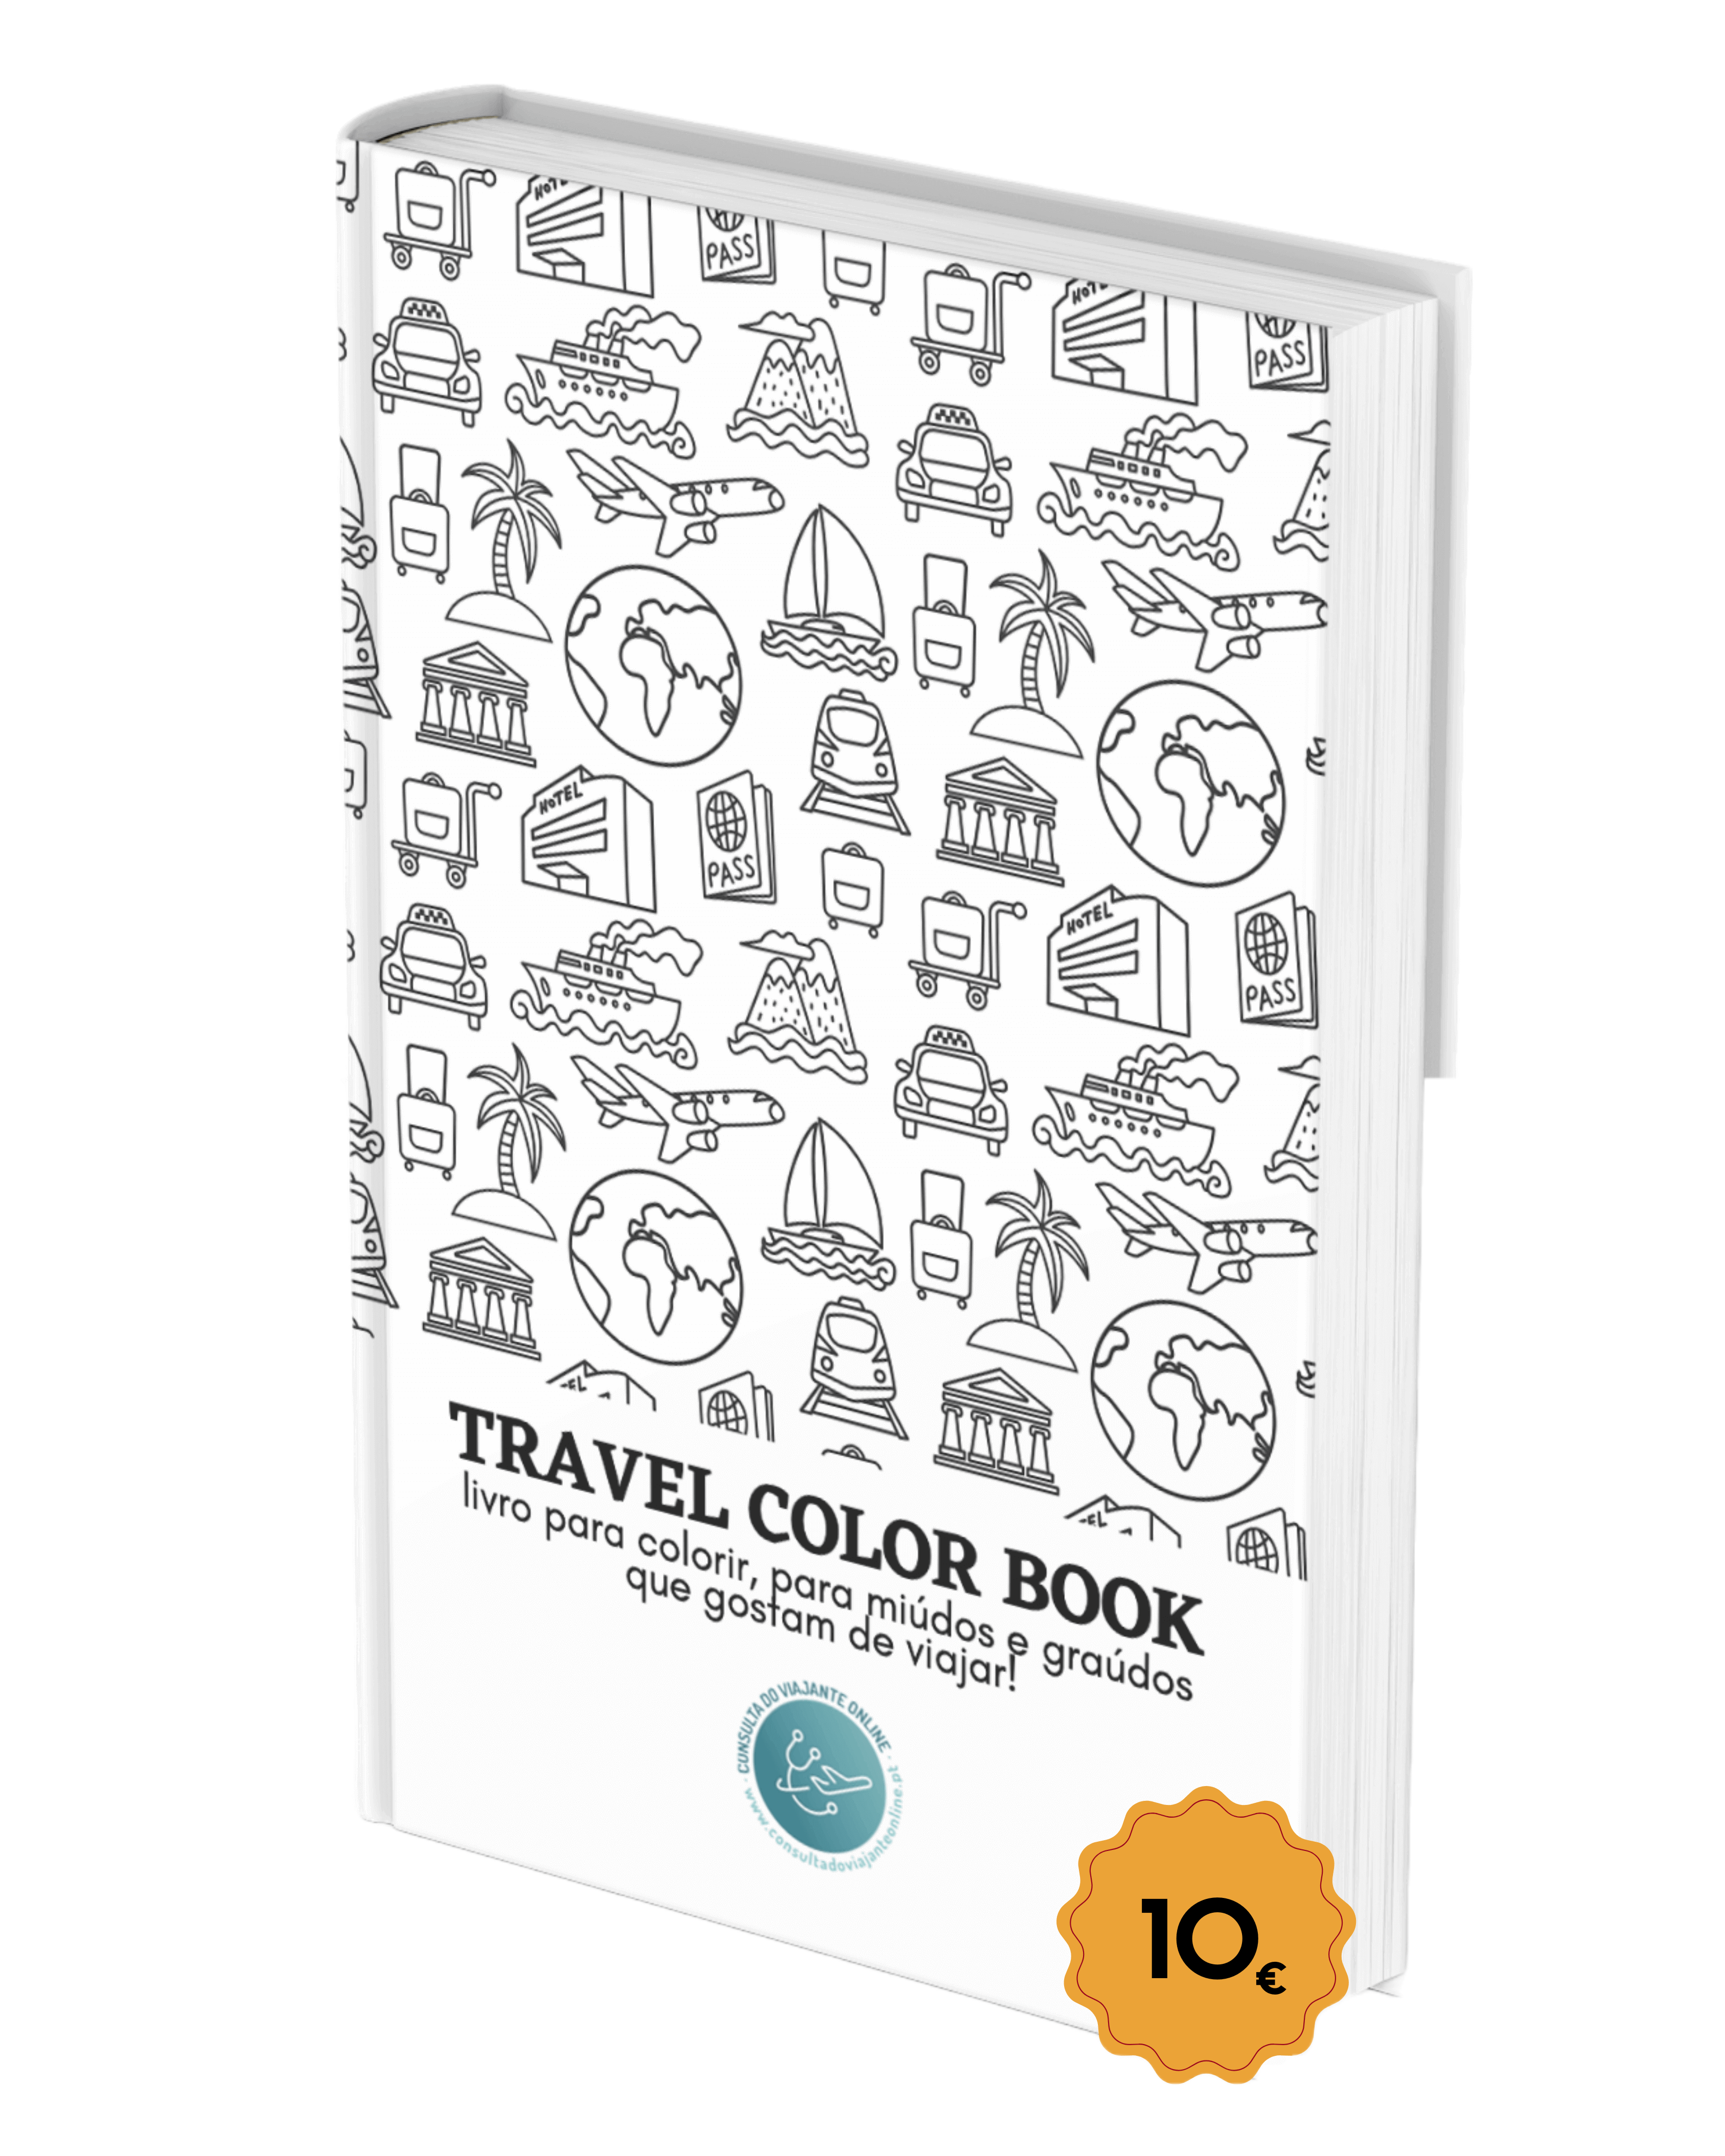 Consulta do Viajante Online travel color book2 andreia castro